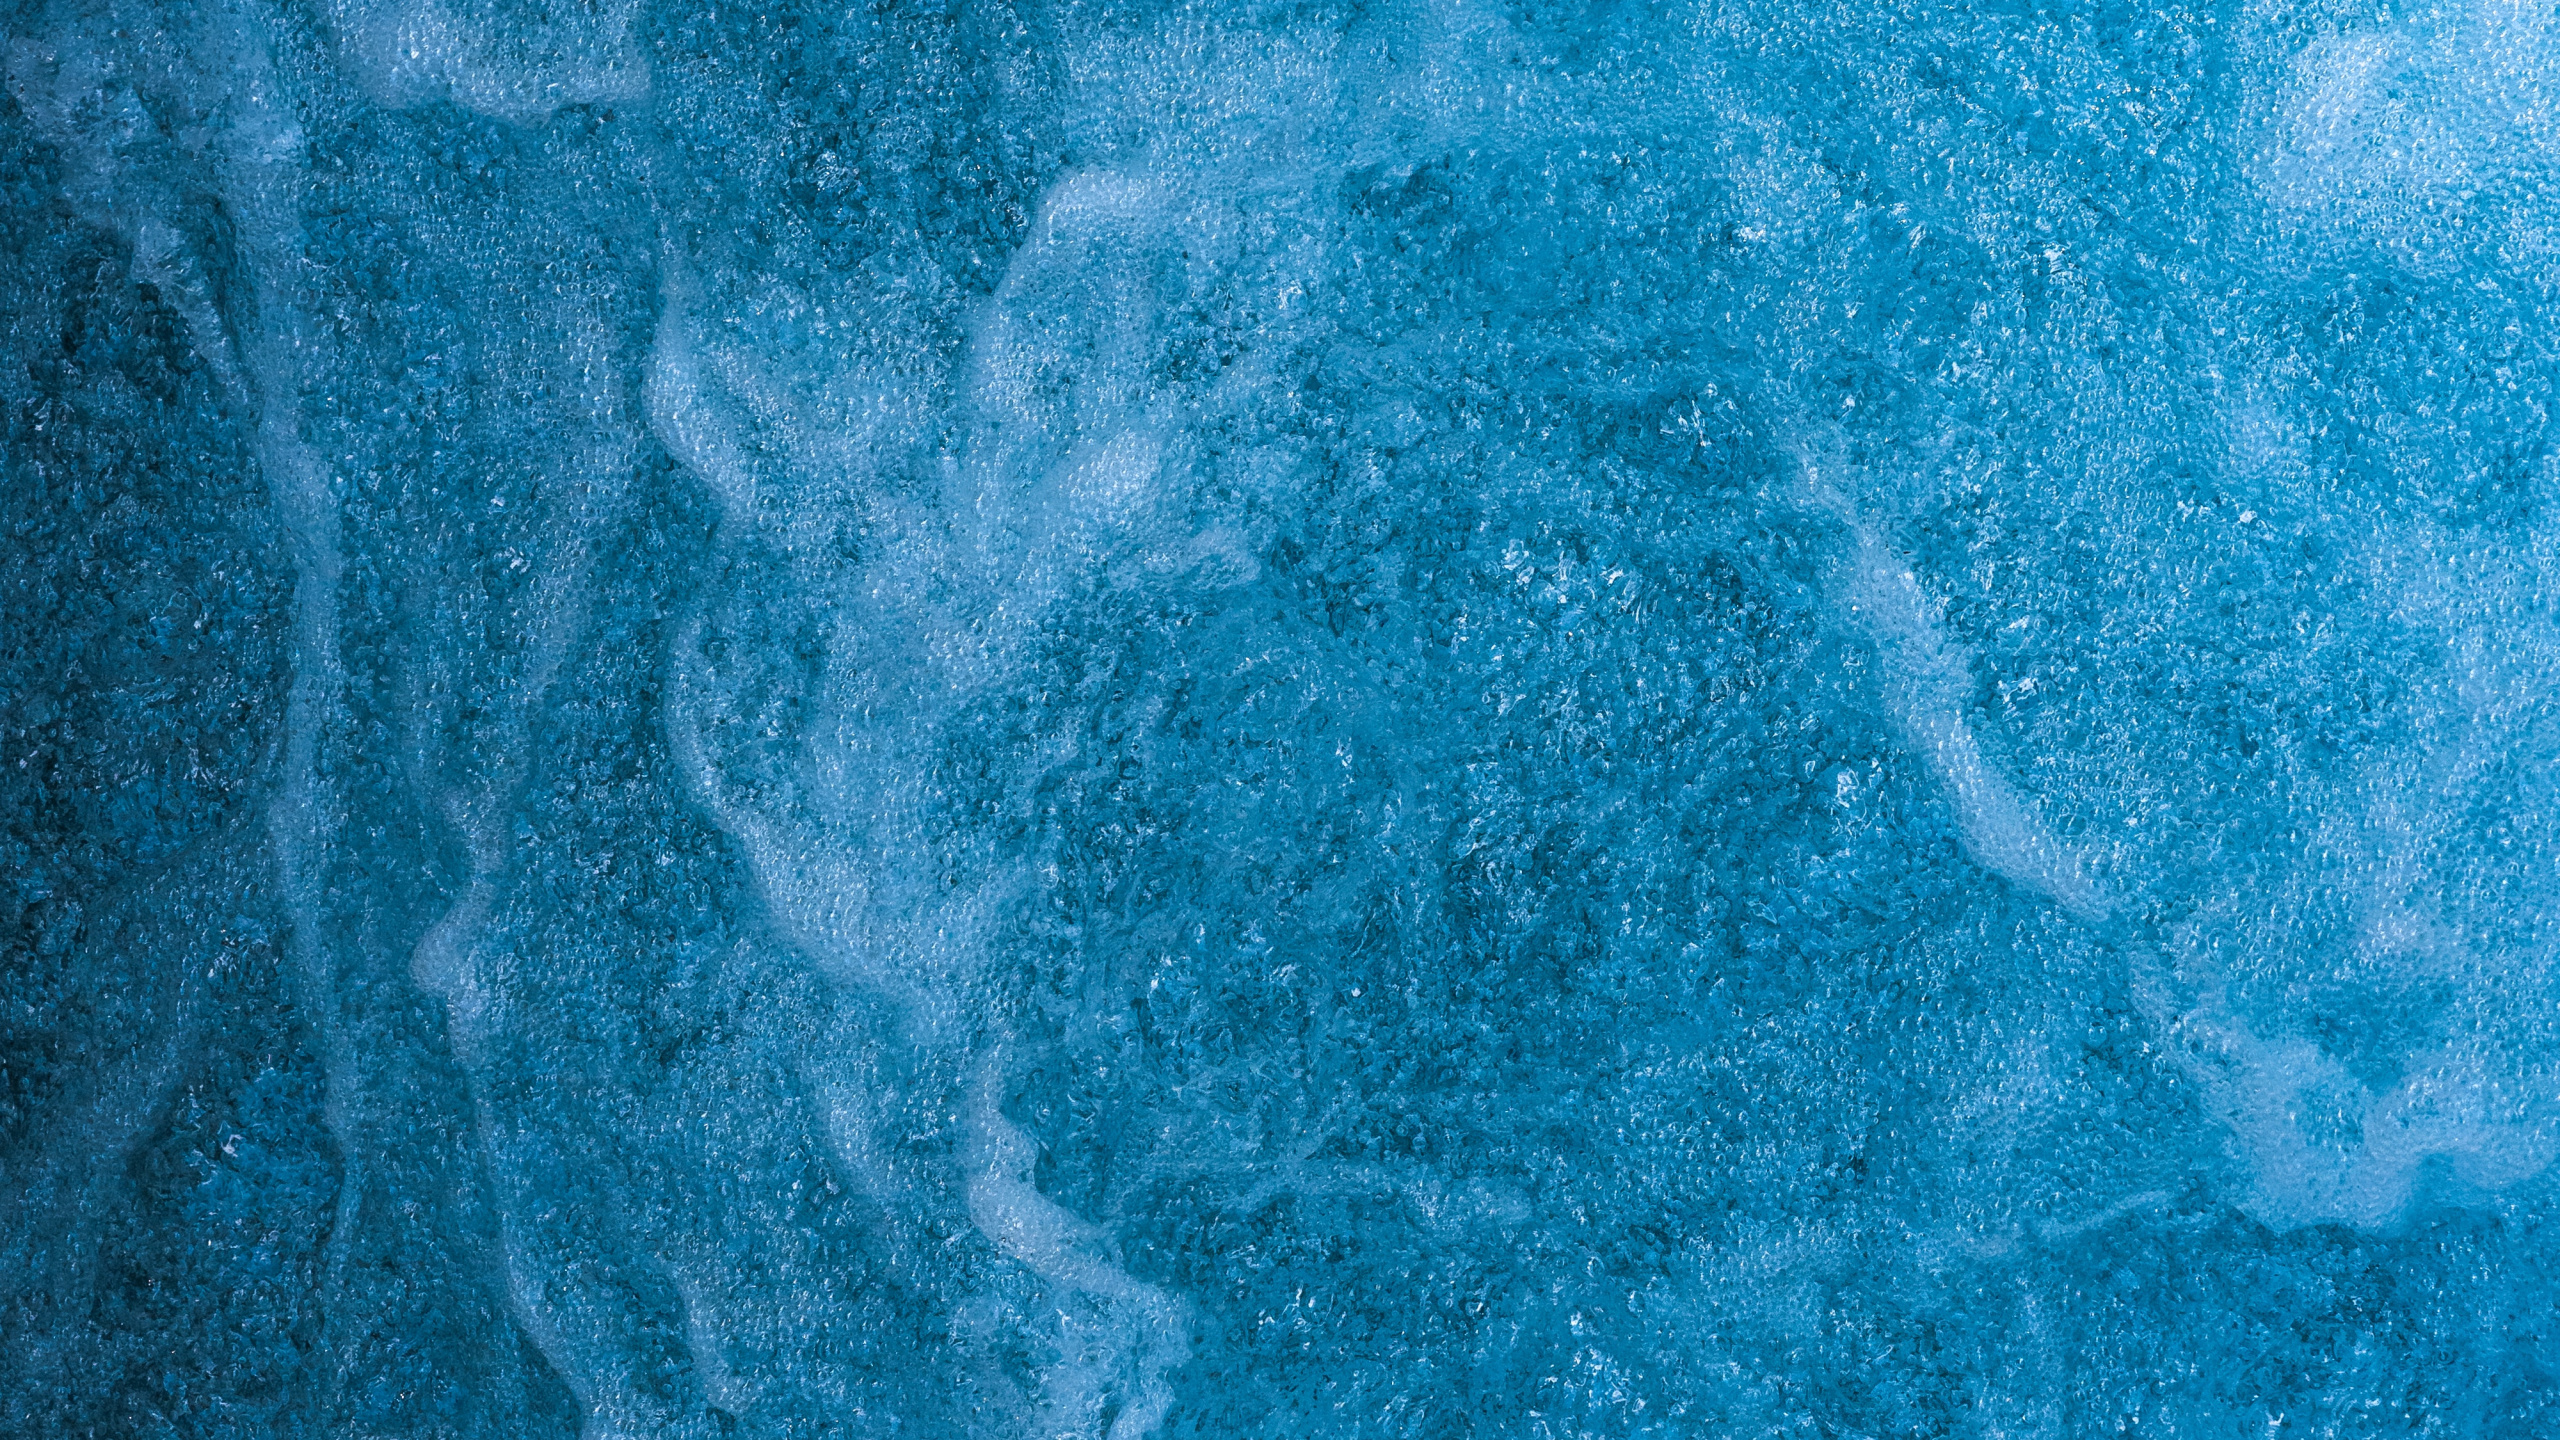 Textura, Agua, Azul, Aqua, Turquesa. Wallpaper in 2560x1440 Resolution